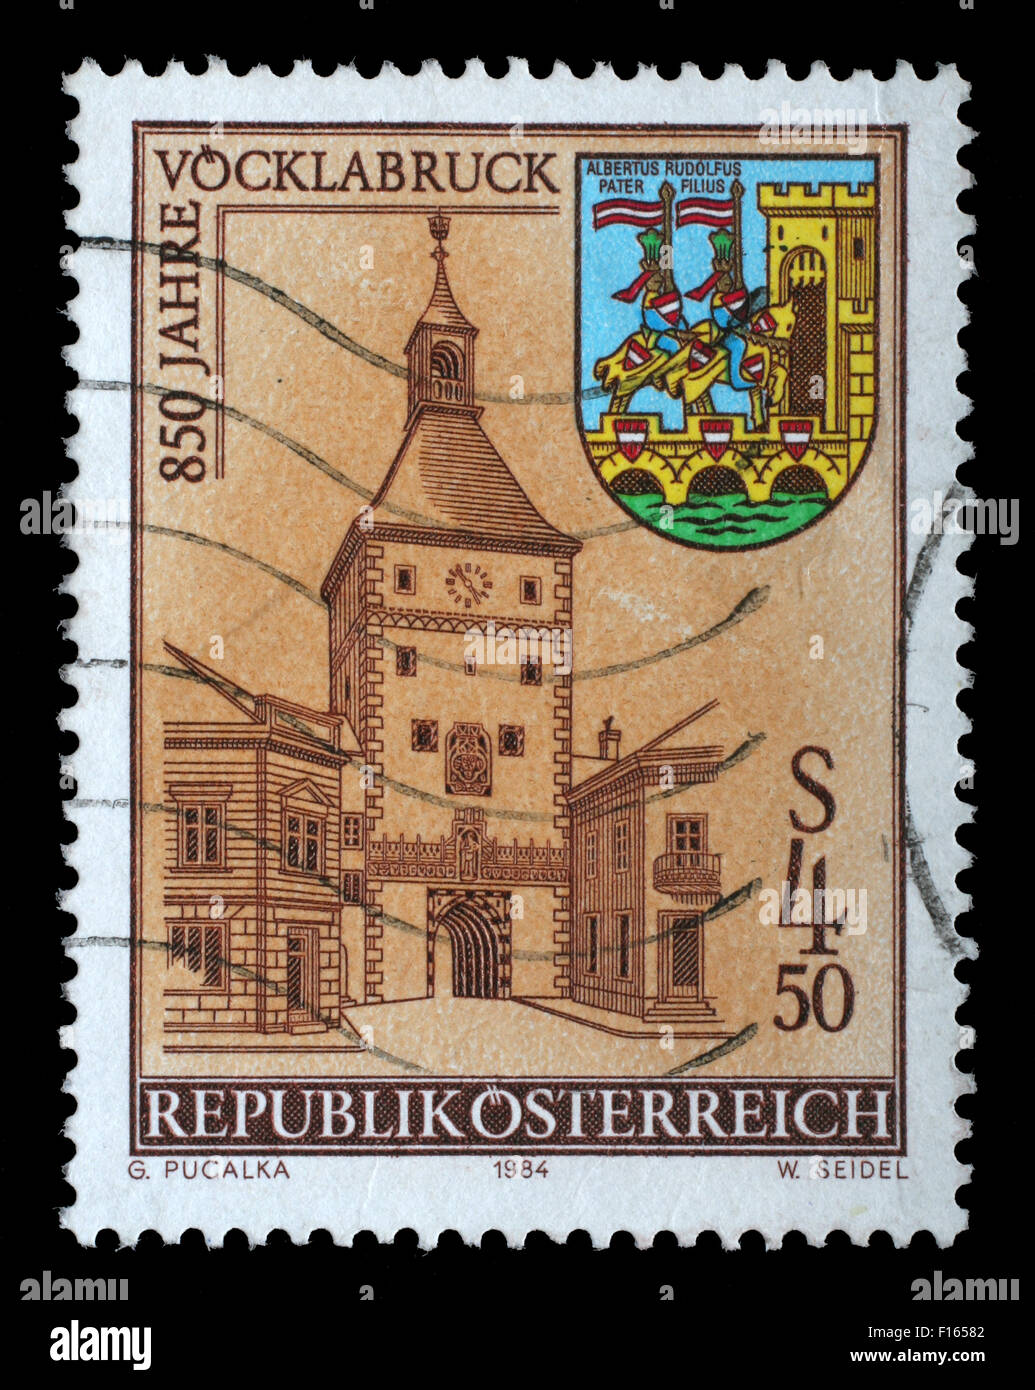 Österreich - CIRCA 1984: Briefmarke gedruckt von Österreich zeigt Turm, Arme, Stadt Vöcklabruck, ca. 1984 Stockfoto